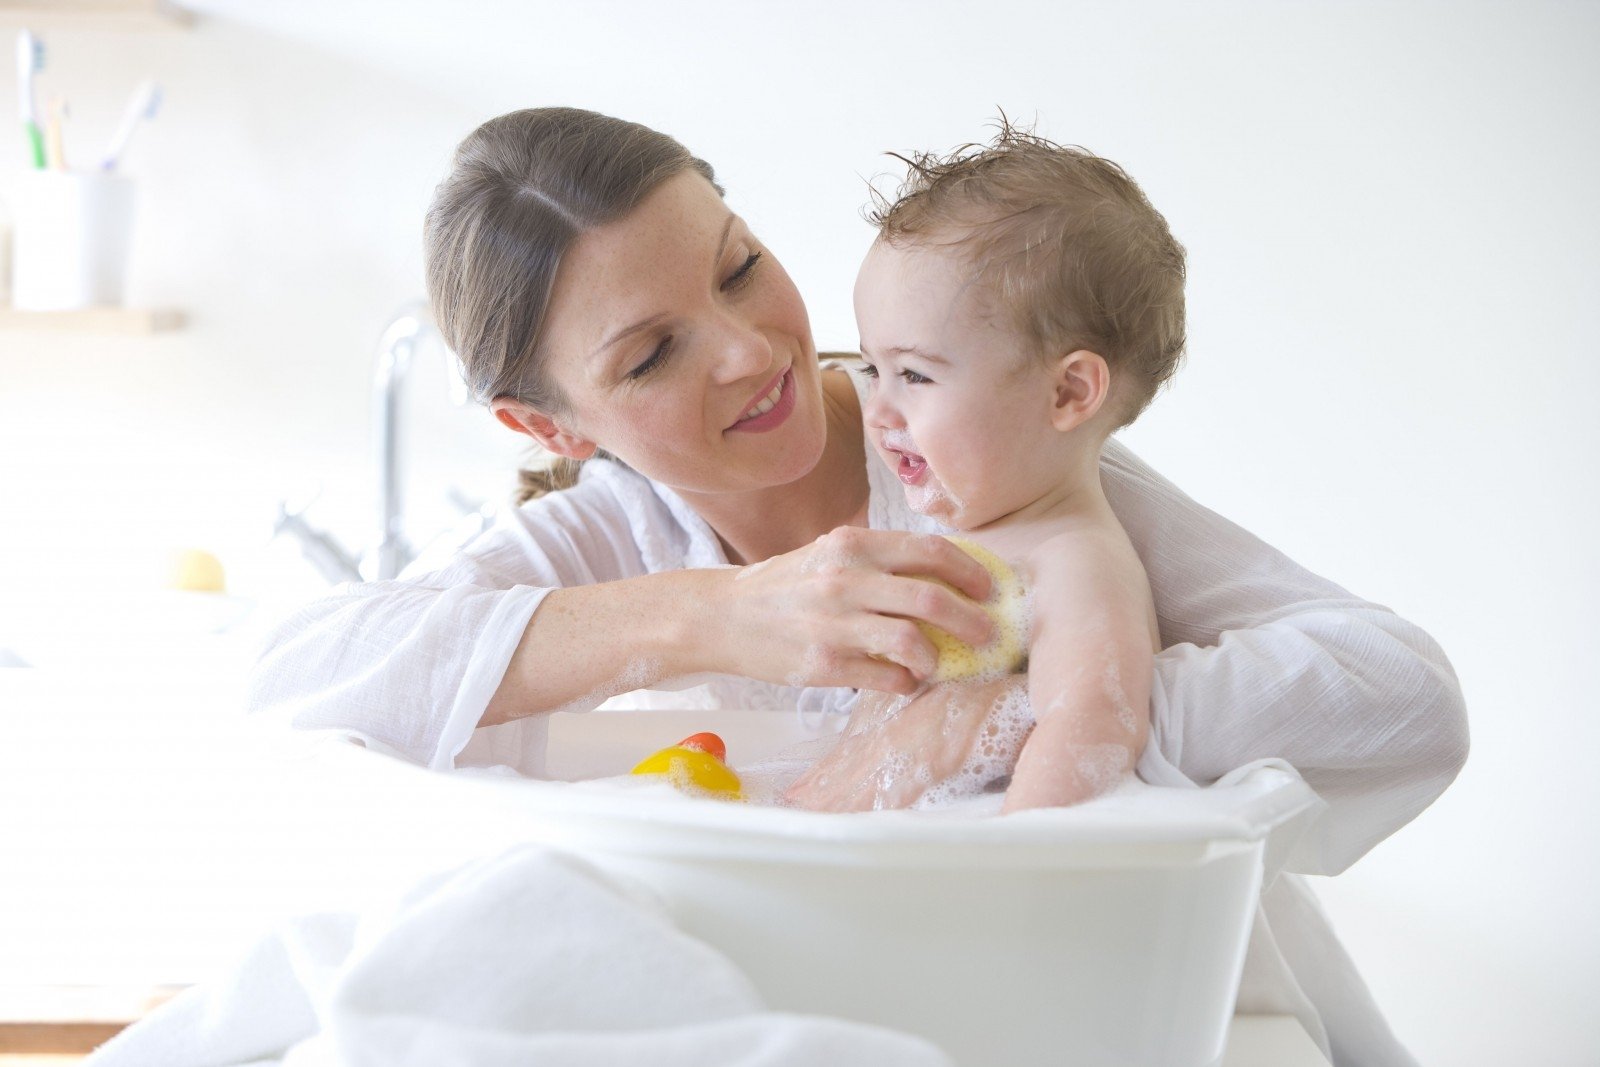 Daughter bath. Гигиена малыша. Купание малыша. Мама с малышом в ванне. Мытье ребенка.